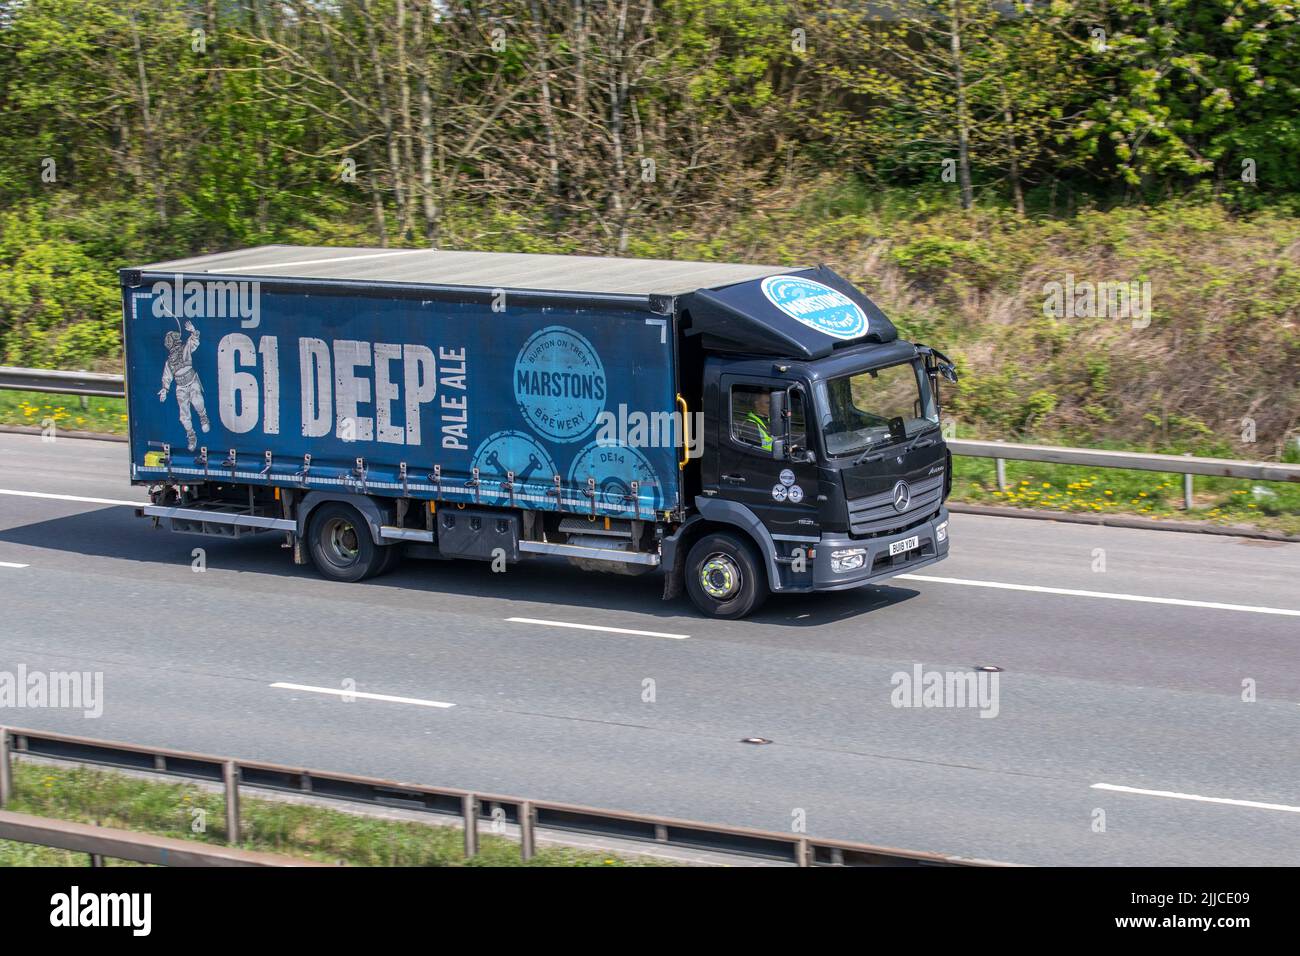 MARSTON 61 DEEP Pale Ale 2018 Mercedes Benz livraison camion 5132cc Diesel rigide ; sur l'autoroute M6, Royaume-Uni Banque D'Images